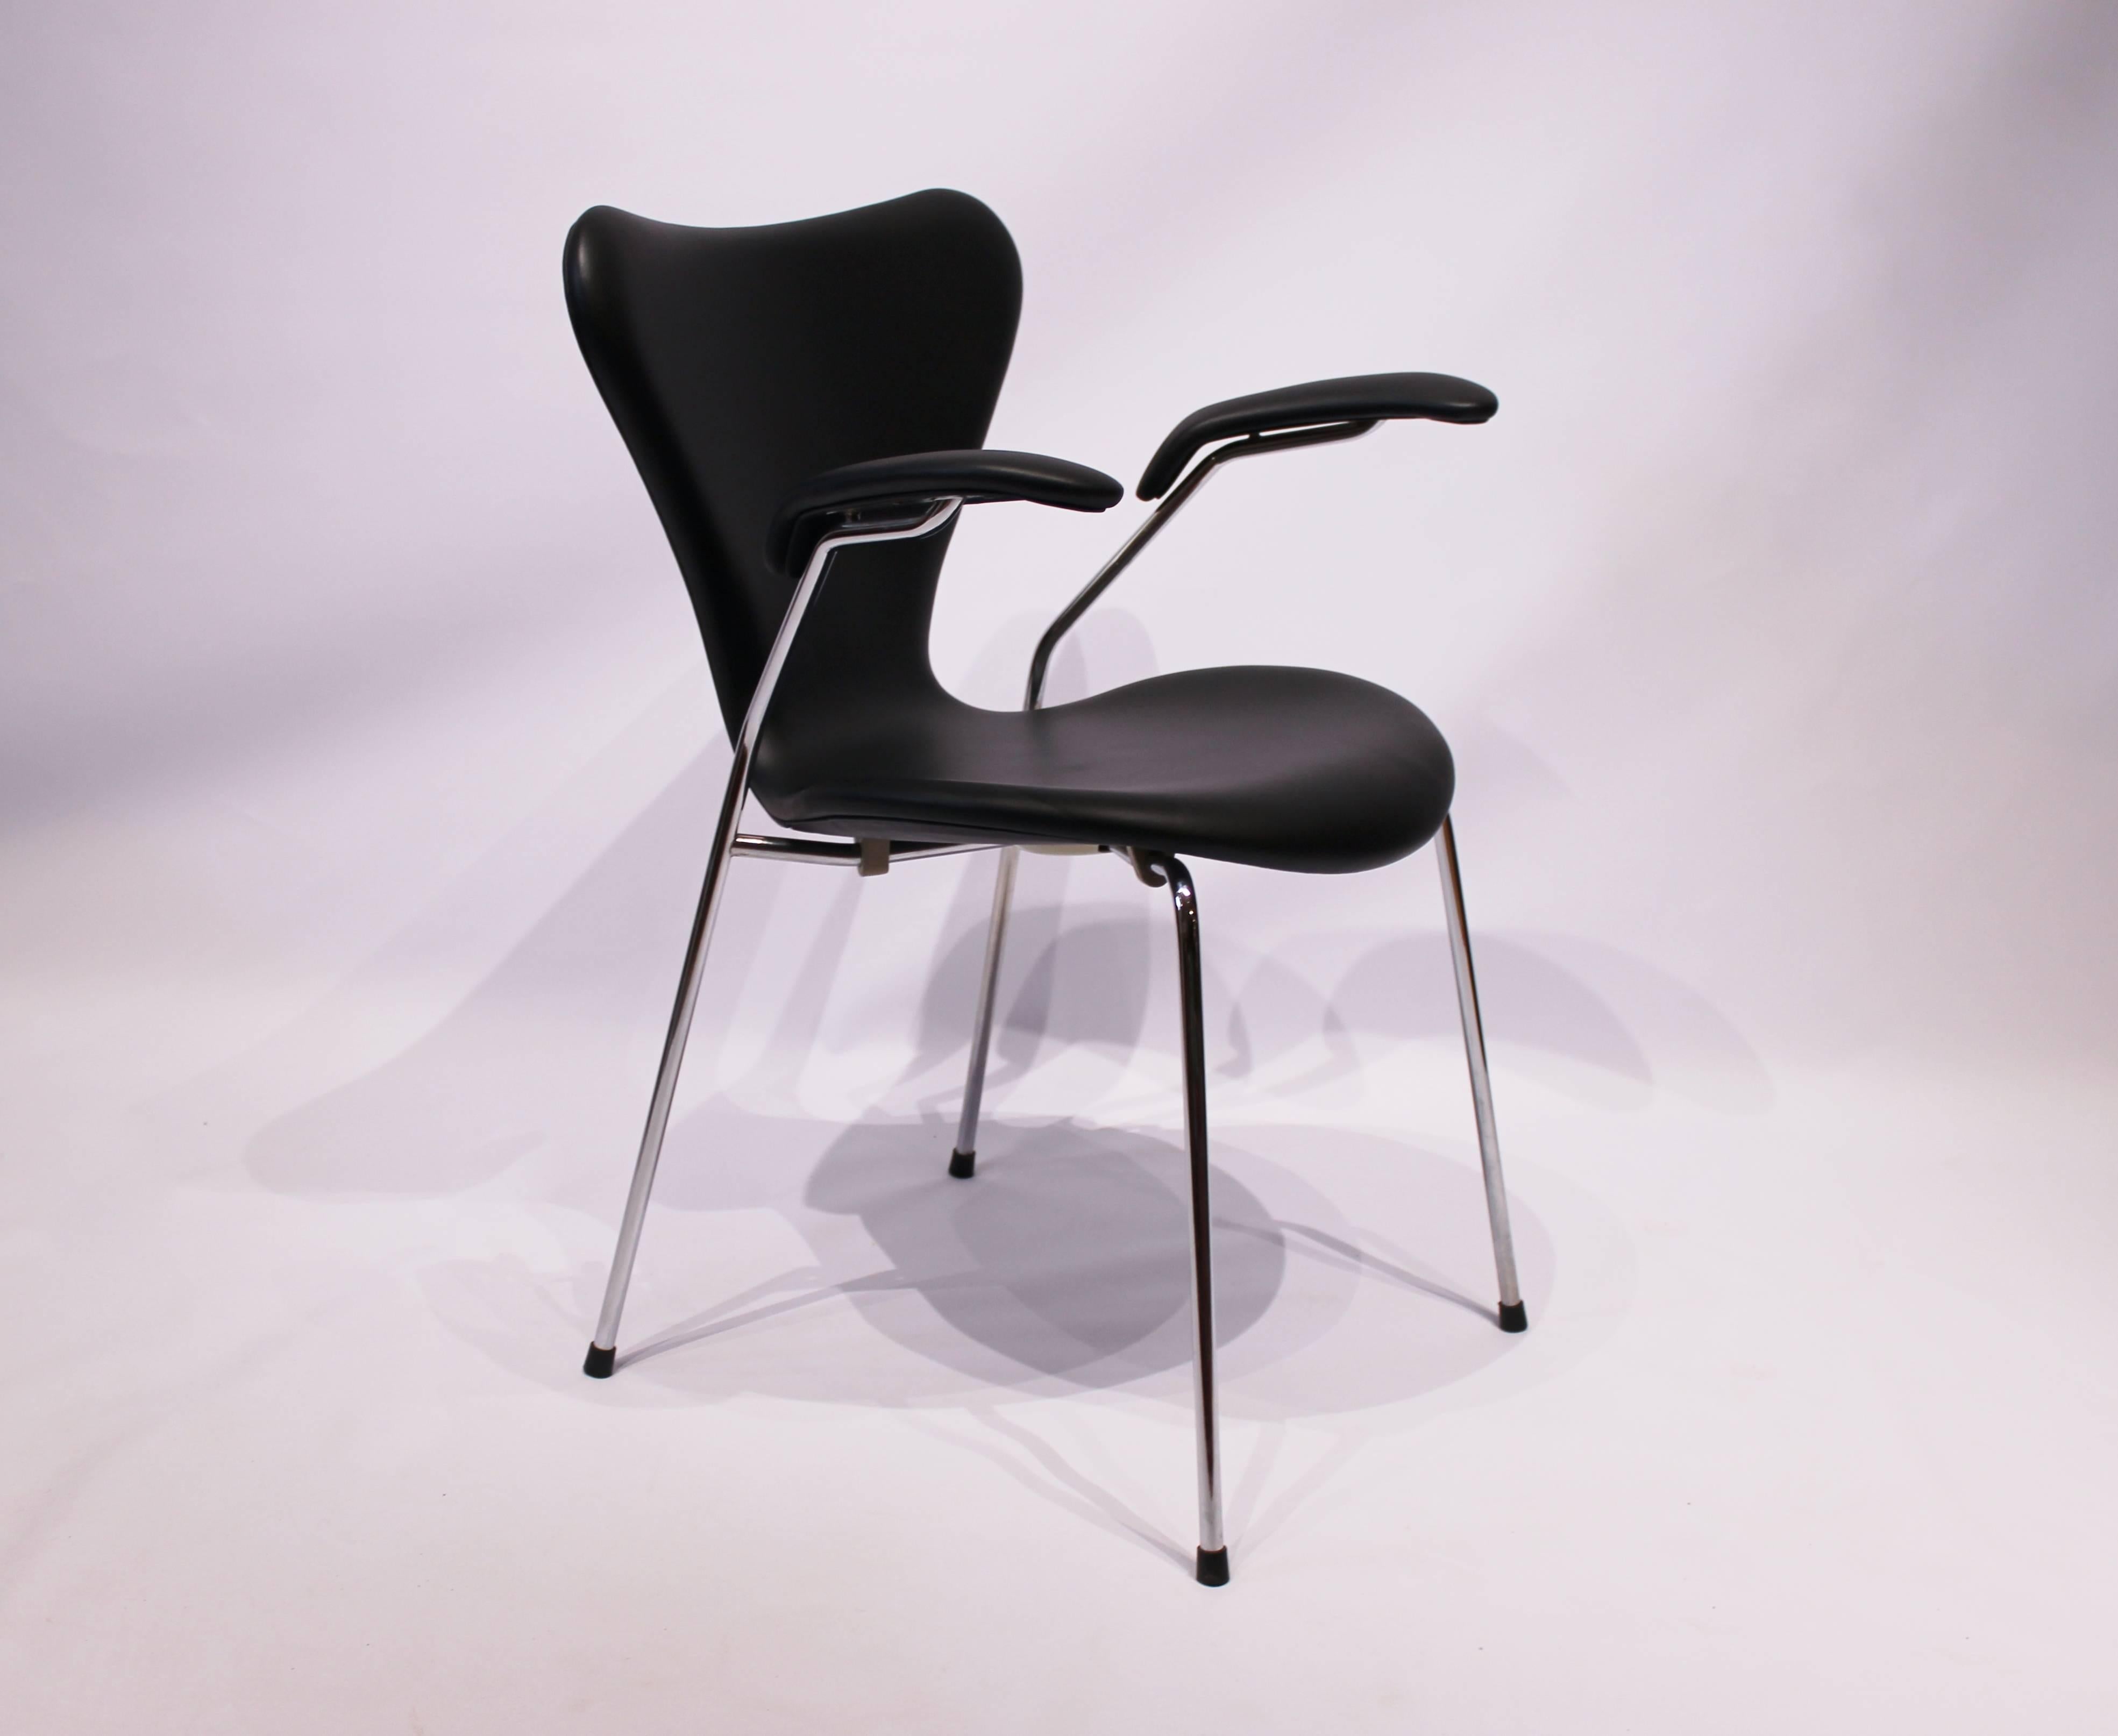 Der Stuhl Seven, Modell 3207, der 1955 von Arne Jacobsen entworfen und in den 1980er Jahren von Fritz Hansen hergestellt wurde, ist eine echte Ikone des modernen Designs der Jahrhundertmitte, die noch immer für ihre zeitlose Eleganz und